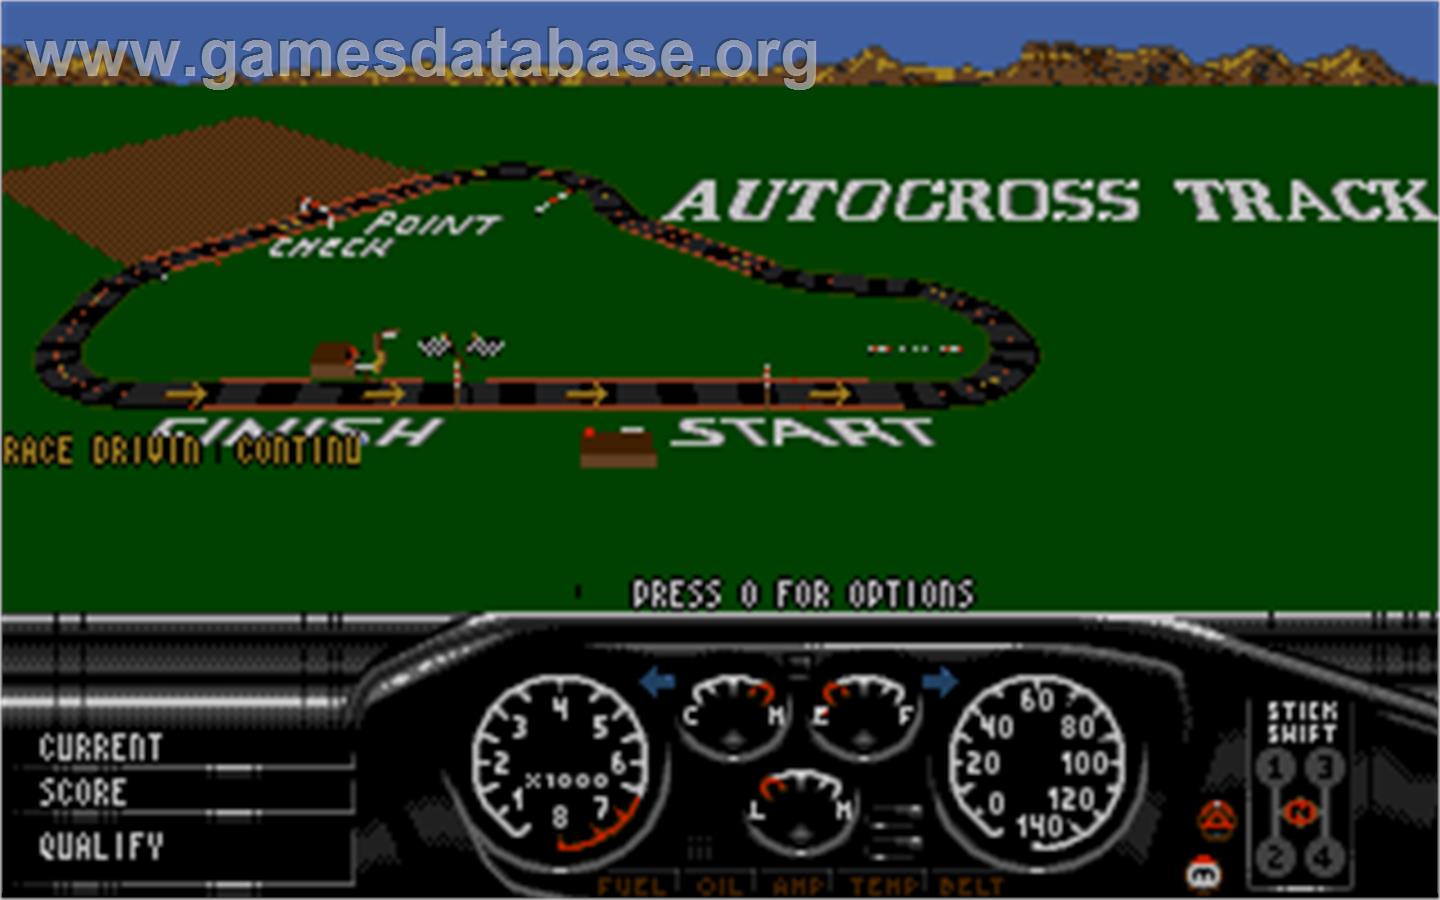 Race Drivin' - Atari ST - Artwork - In Game